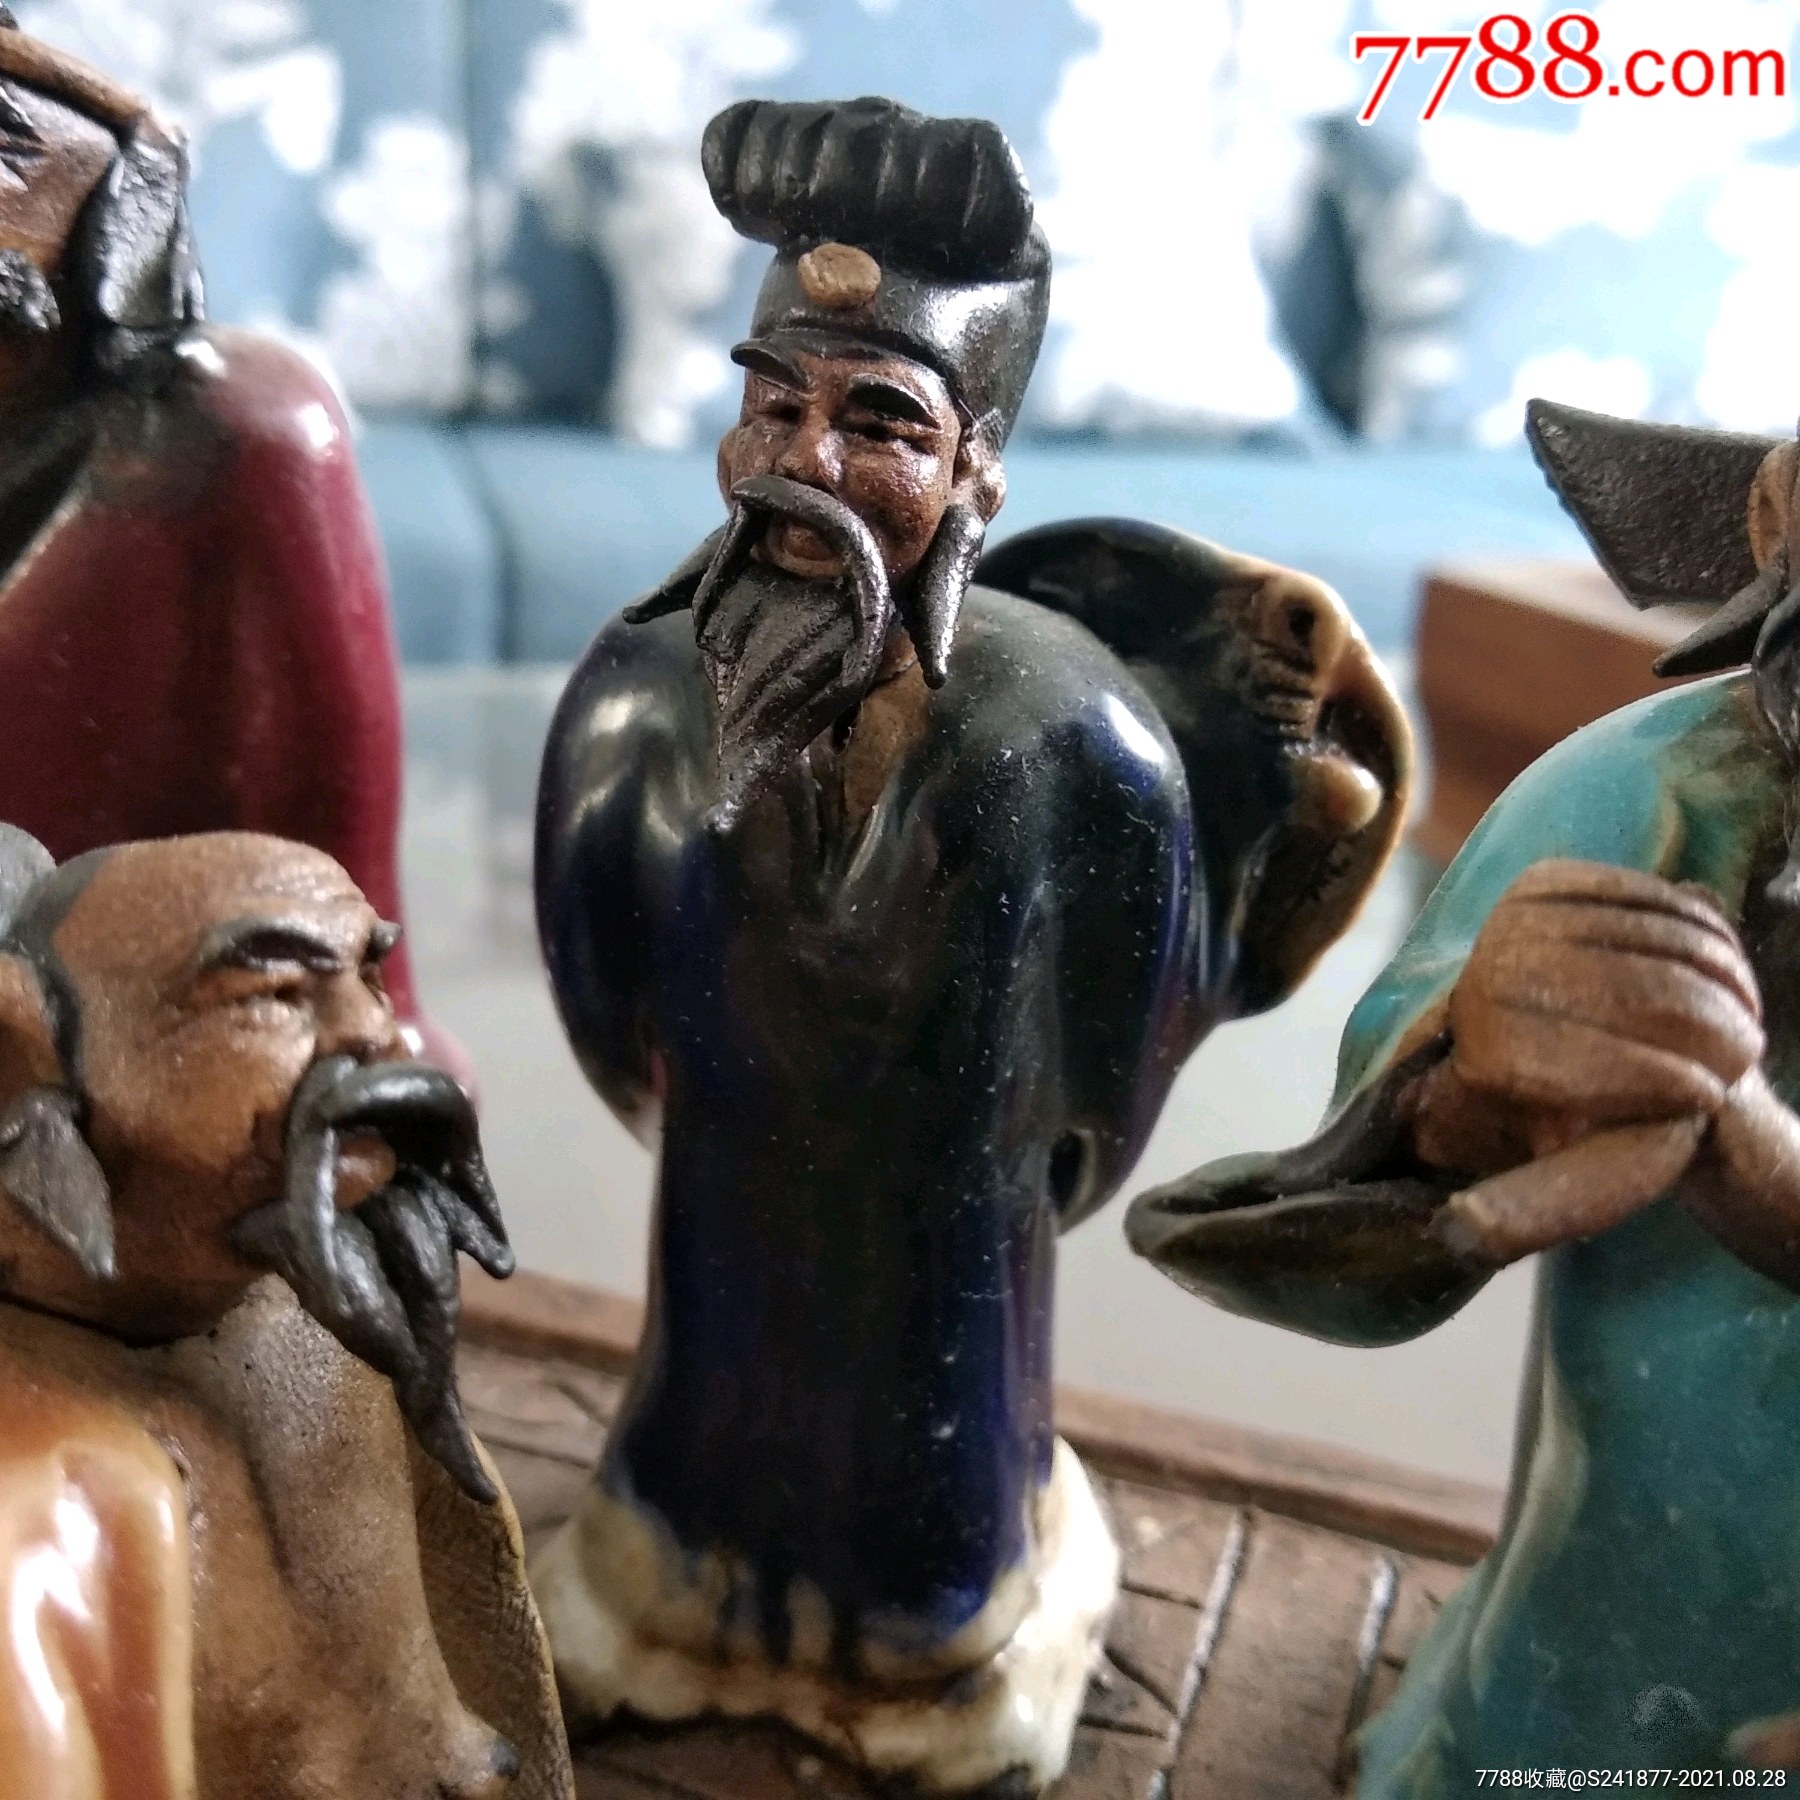 石湾陶瓷八仙人物图像图片